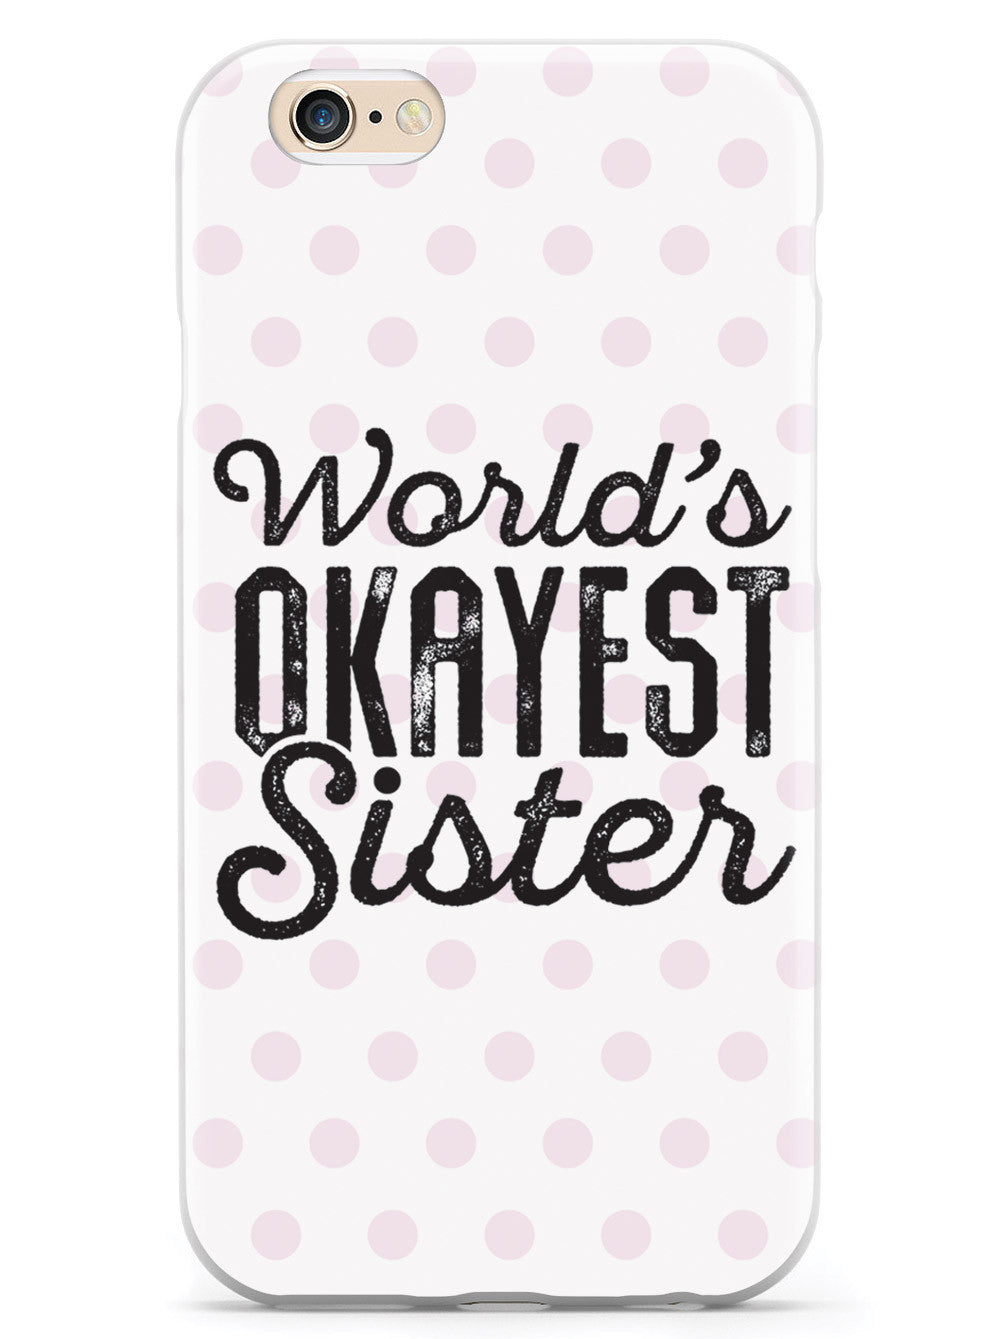 World's Okayest Sister - White Case